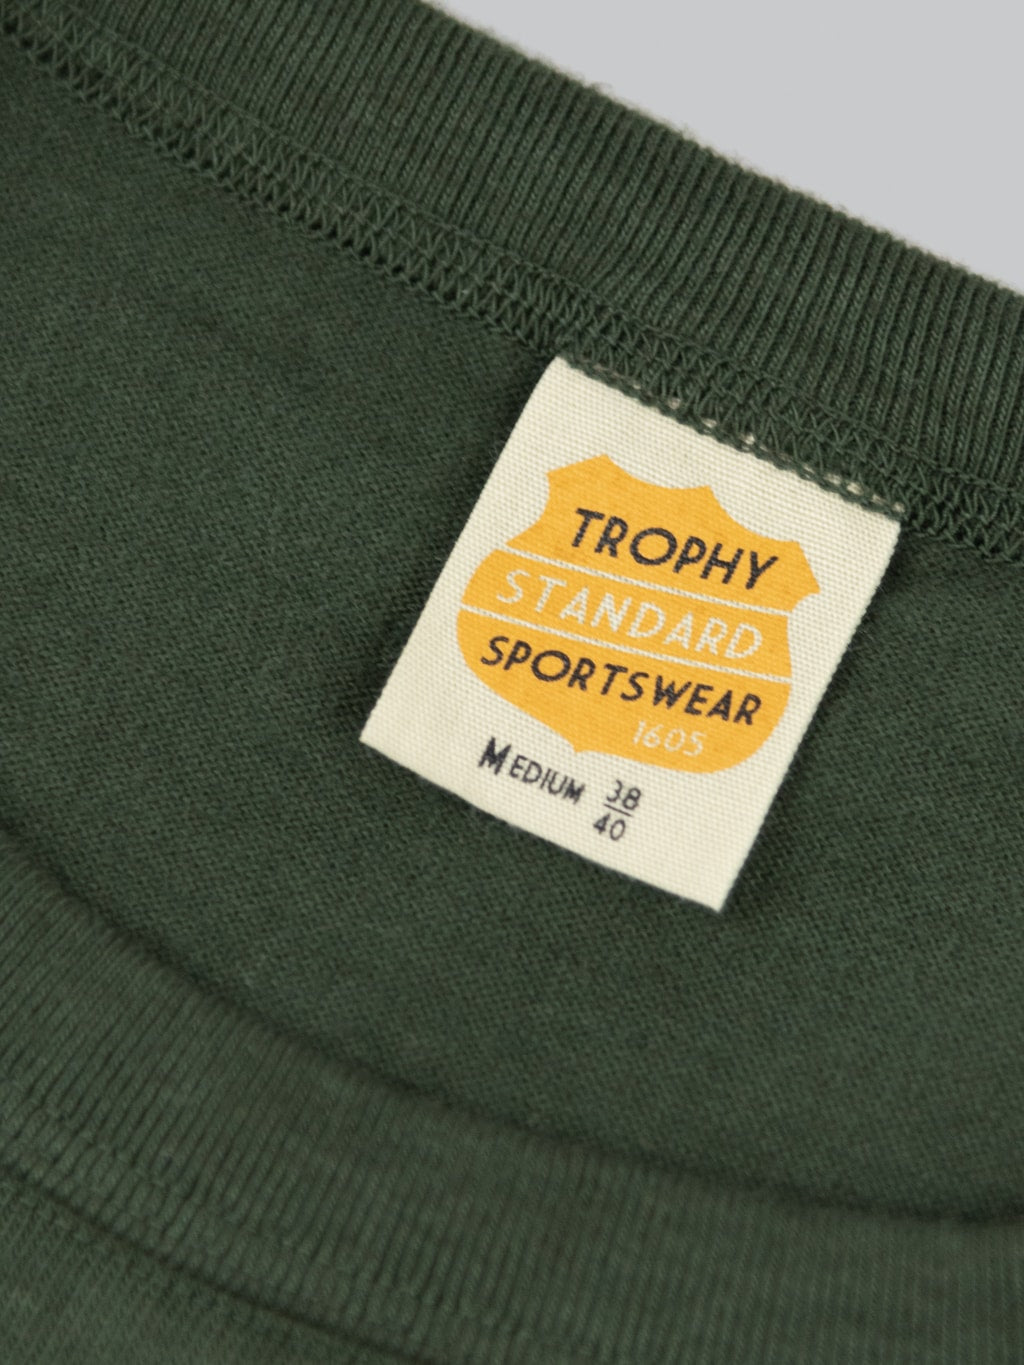 trophy clothing od pocket tee olive interior label